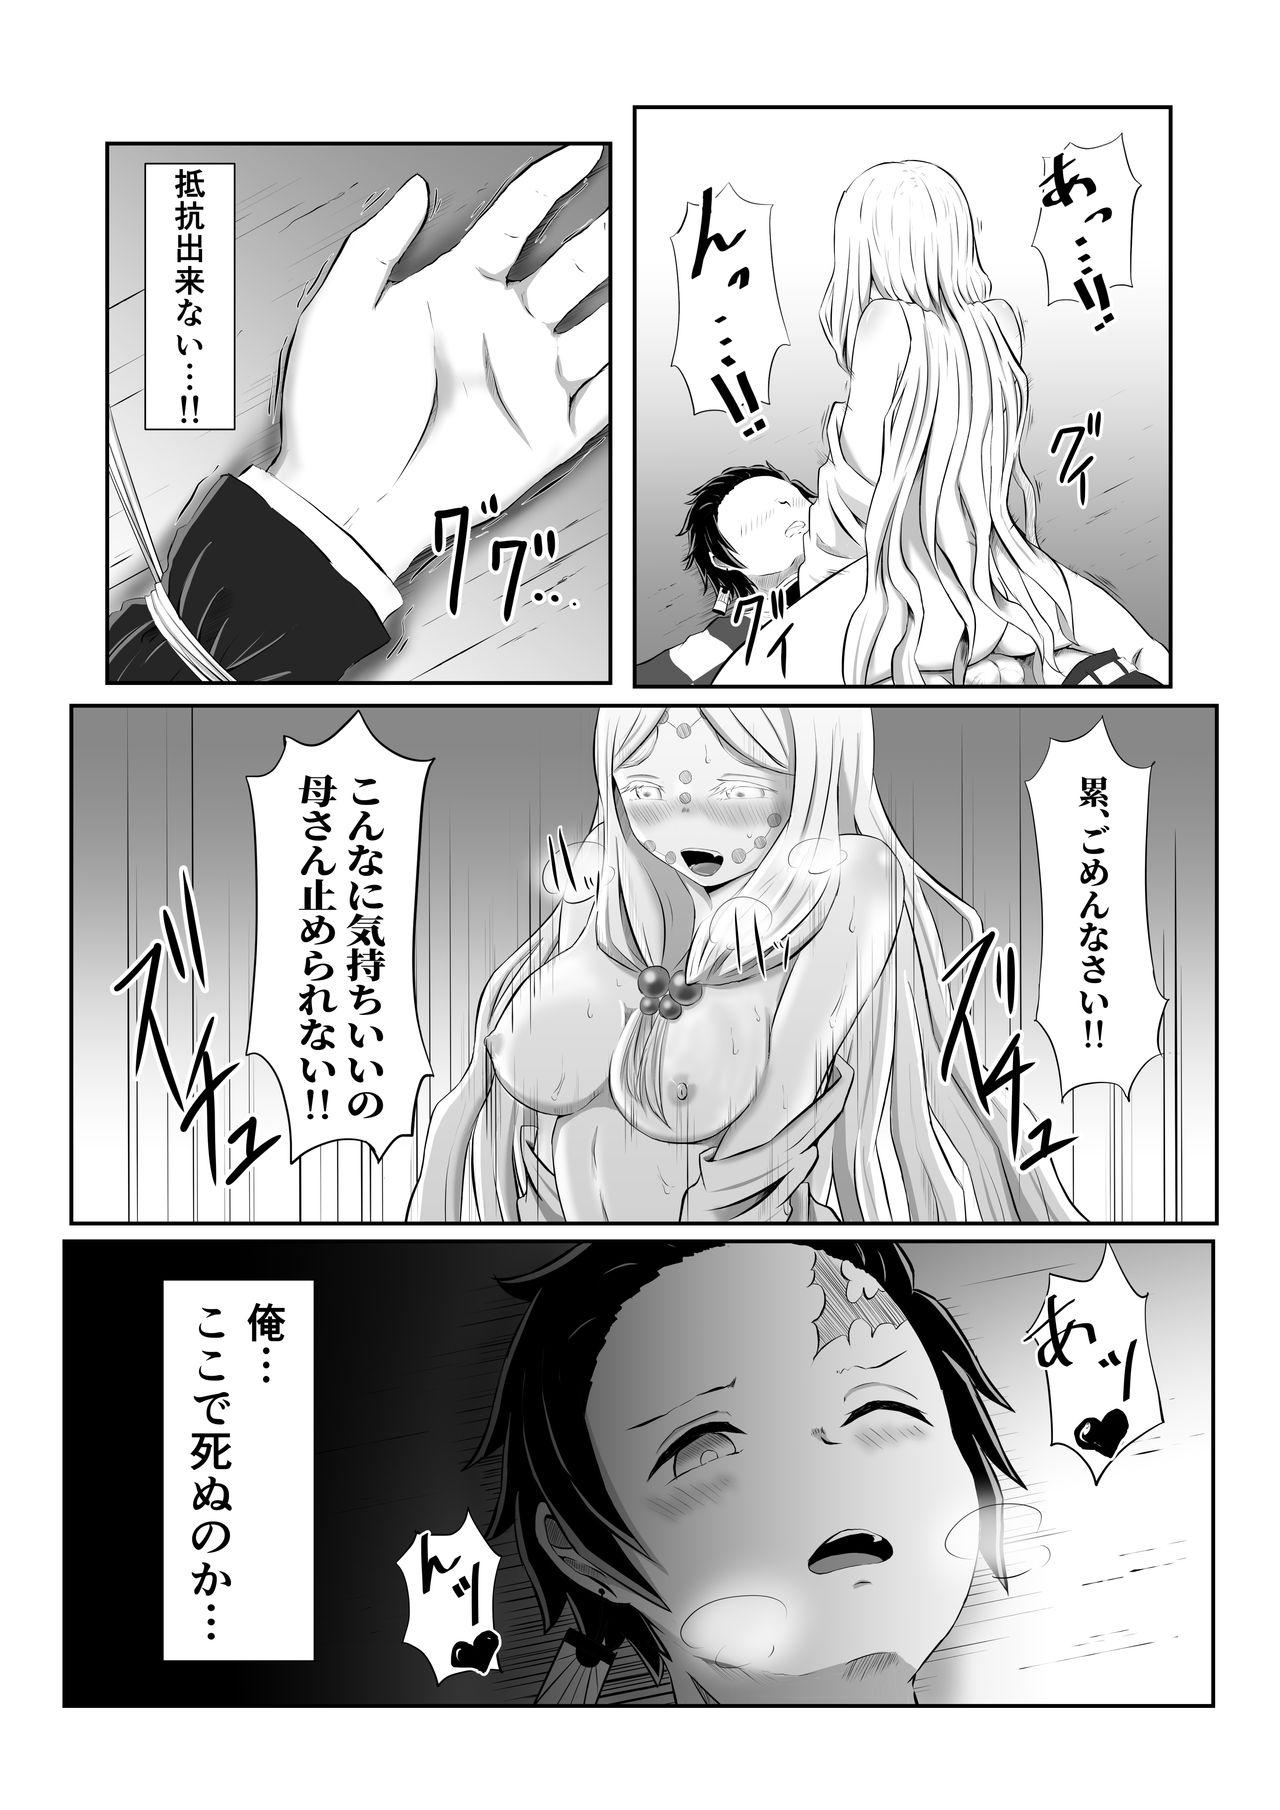 Chick Hinokami Sex. - Kimetsu no yaiba | demon slayer De Quatro - Page 20